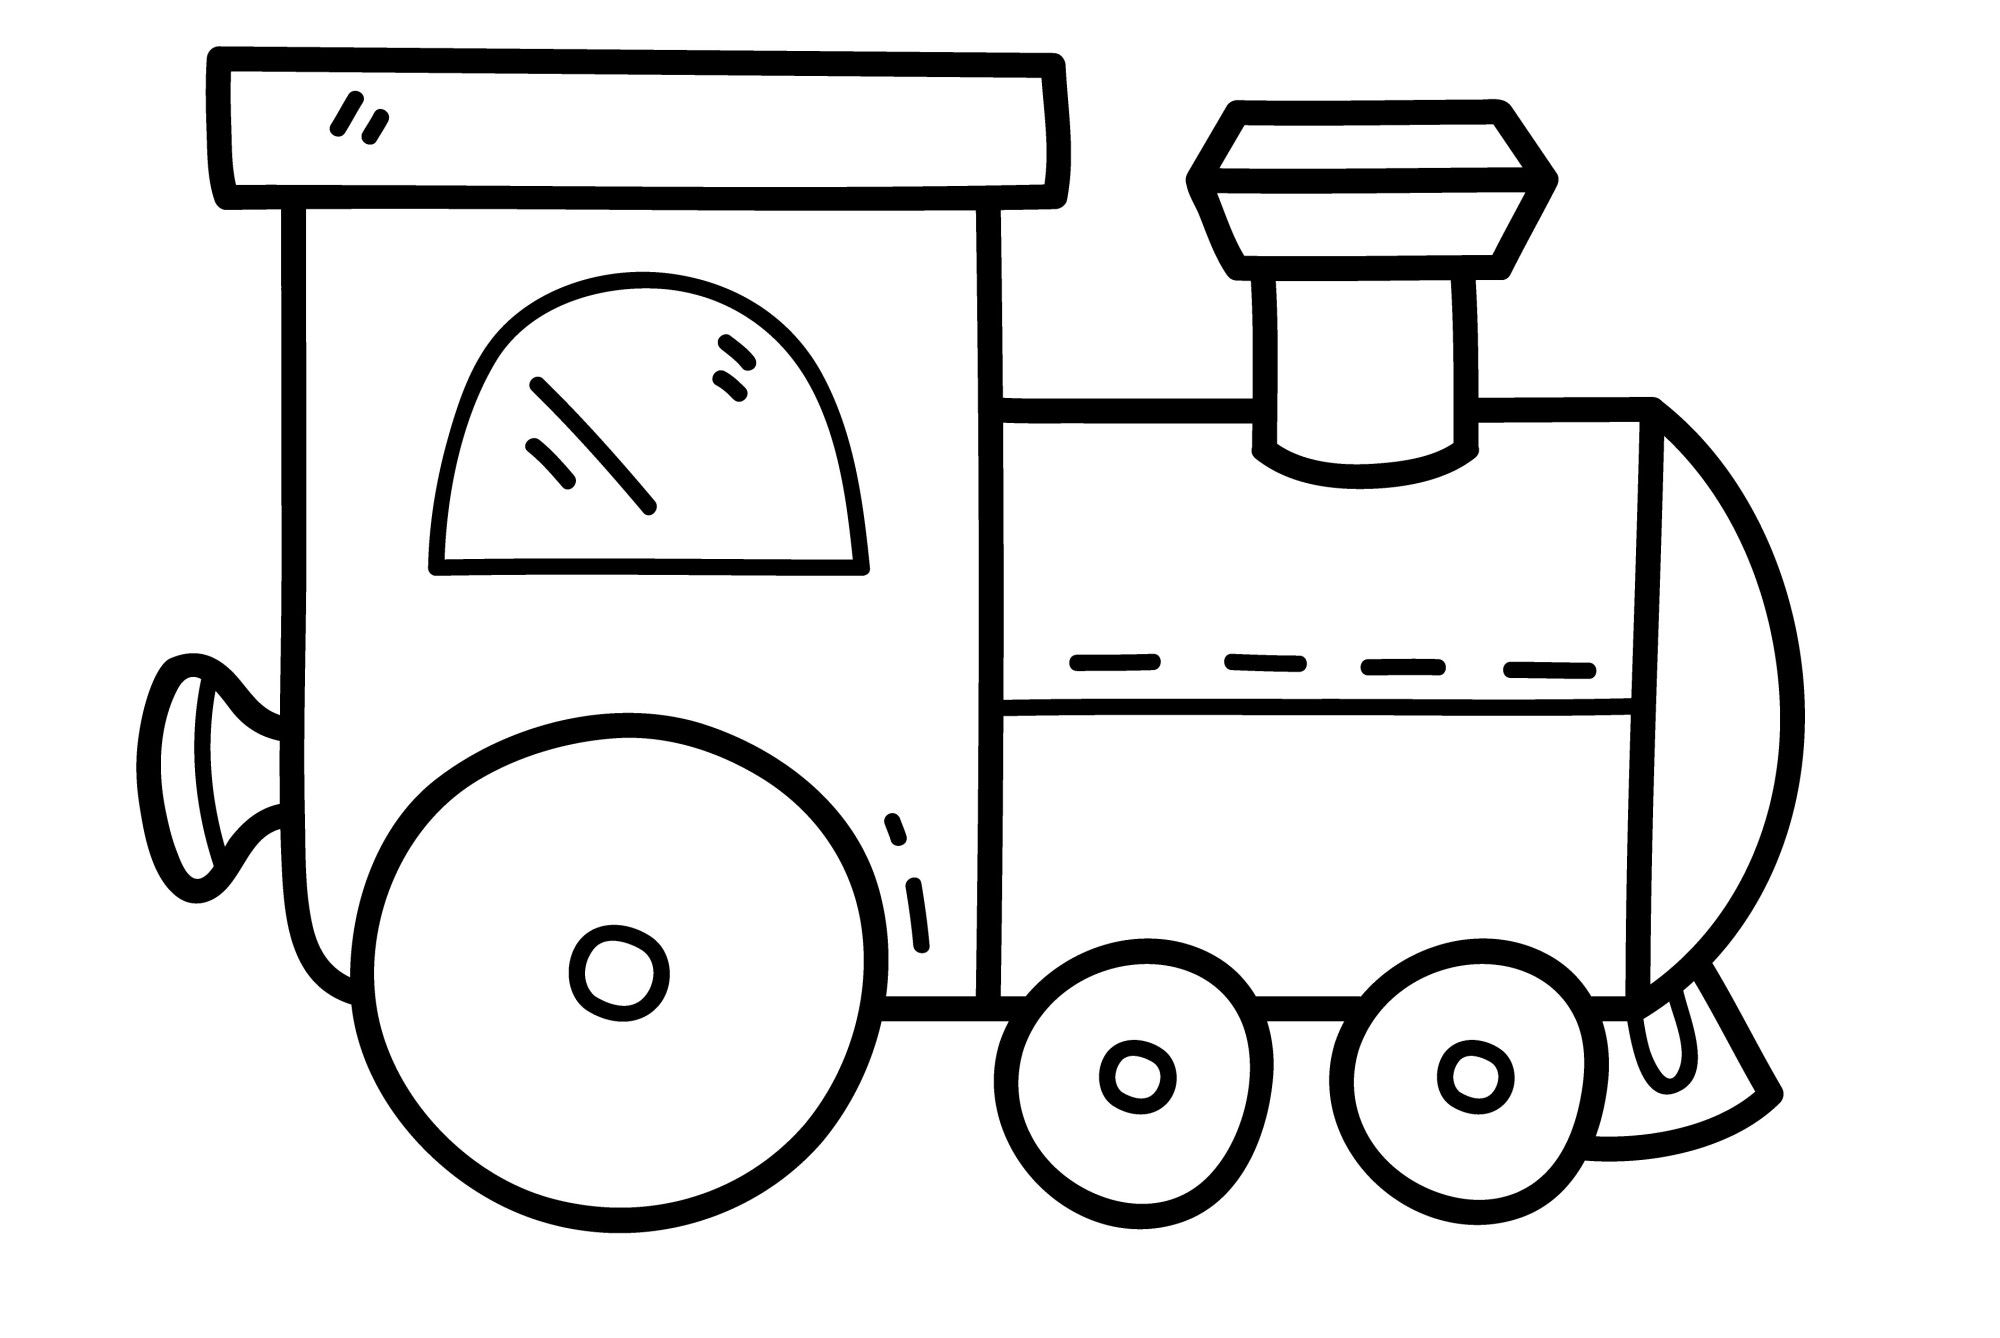 Раскраска для детей: иллюстрация детского игрушечного поезда